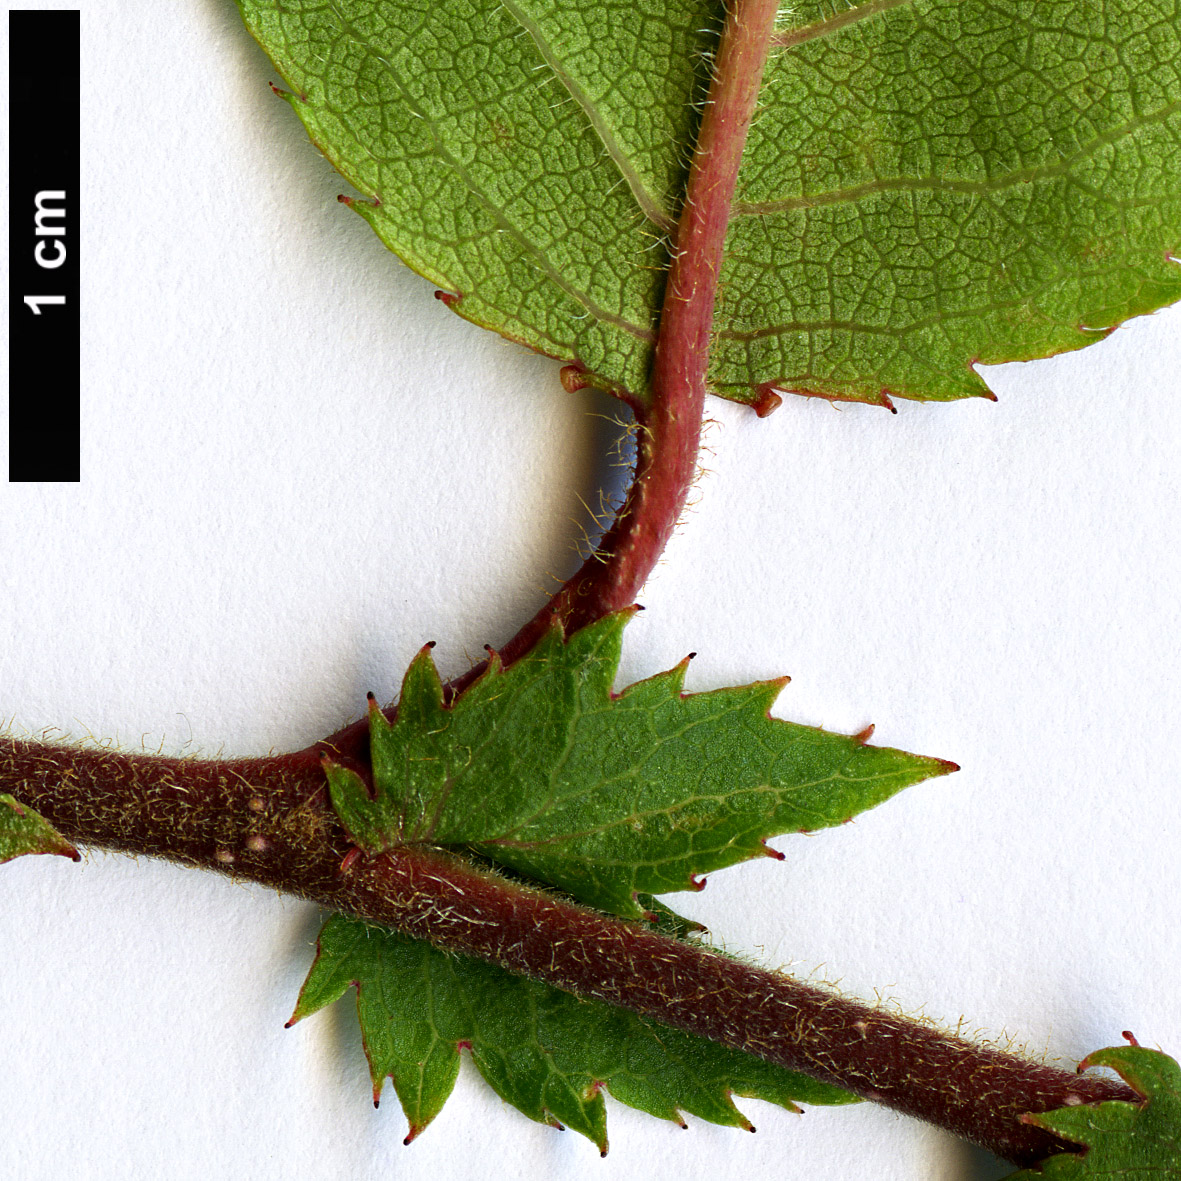 High resolution image: Family: Rosaceae - Genus: Prunus - Taxon: pilosiuscula